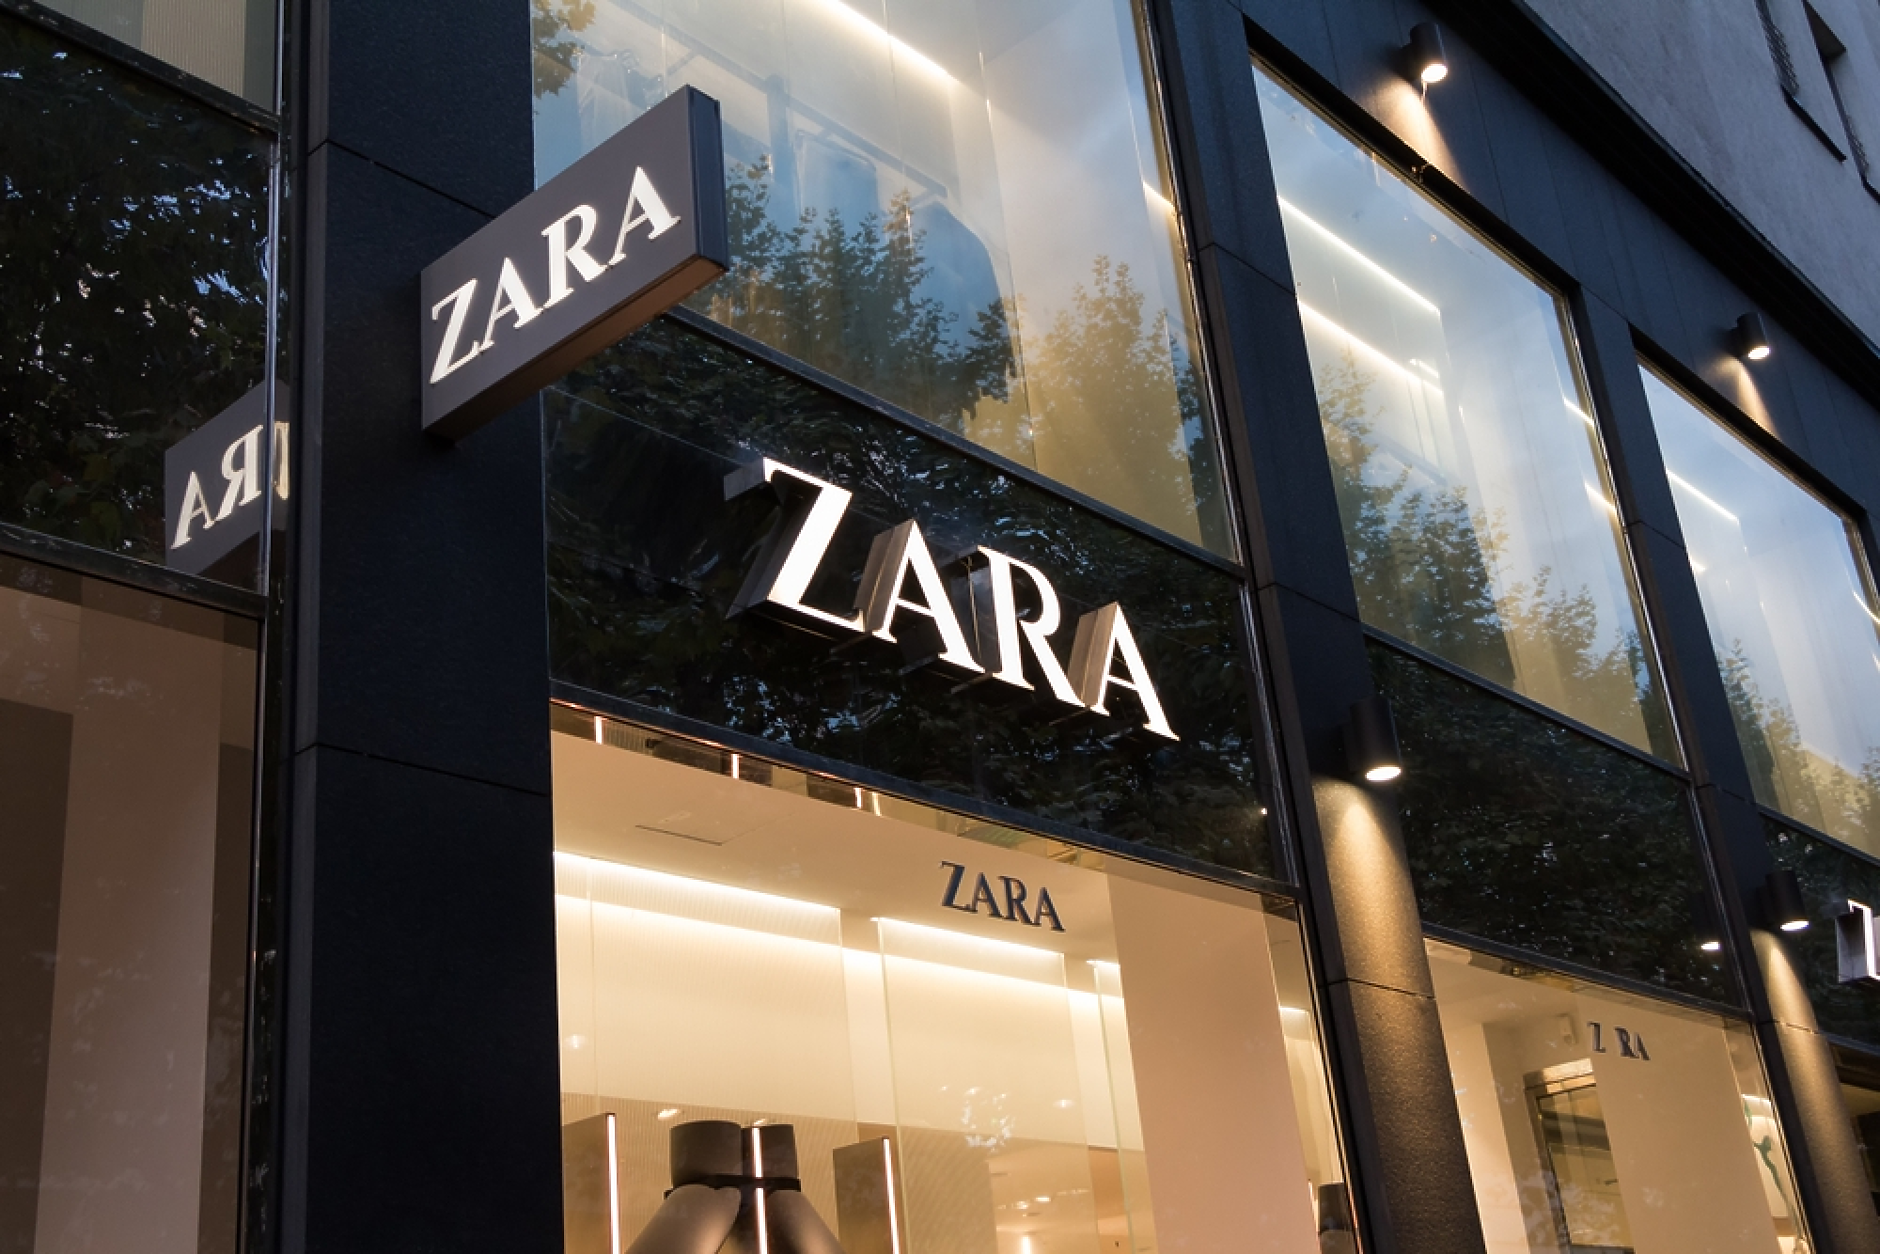 Zara се извини  за рекламна кампания със снимки, наподобяващи войната в Газа